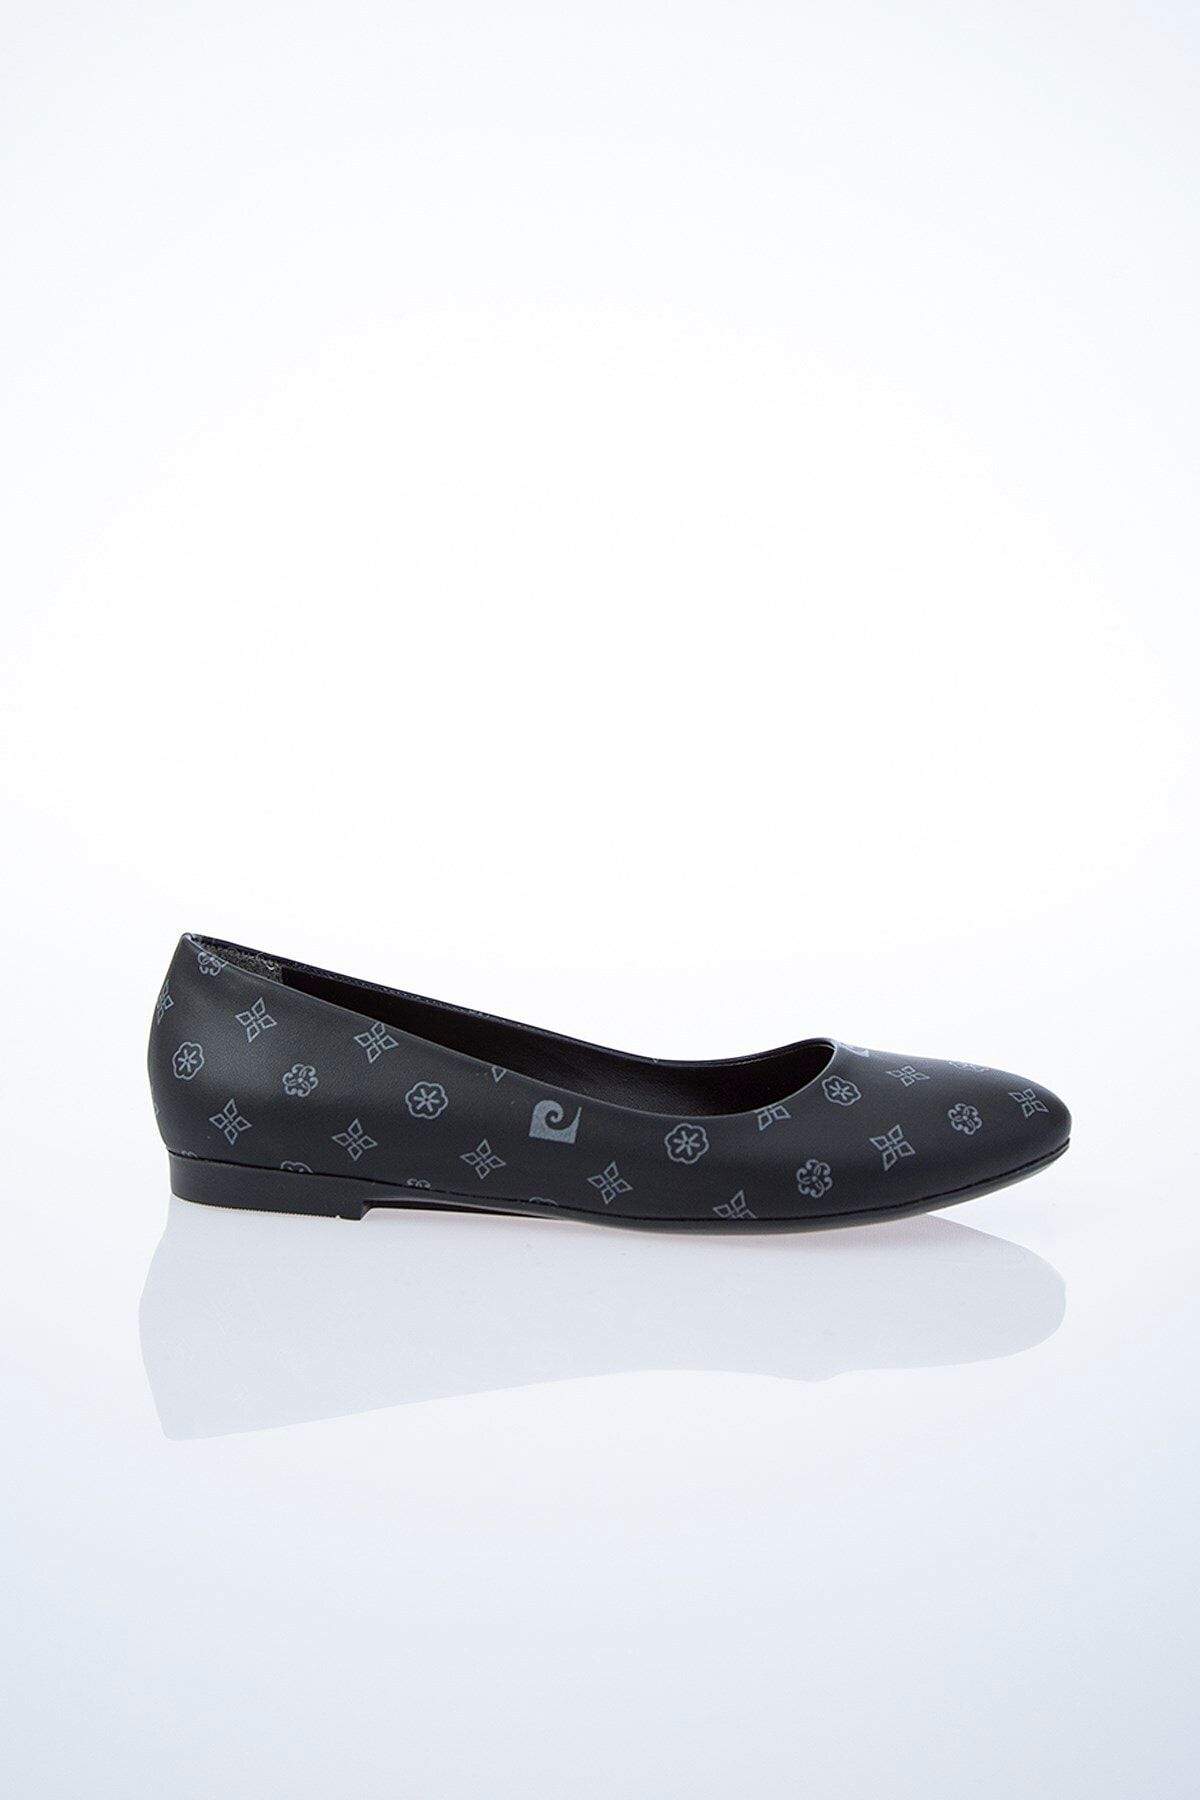 Pierre Cardin Pc-50190 Siyah-gri Kadın Ayakkabı